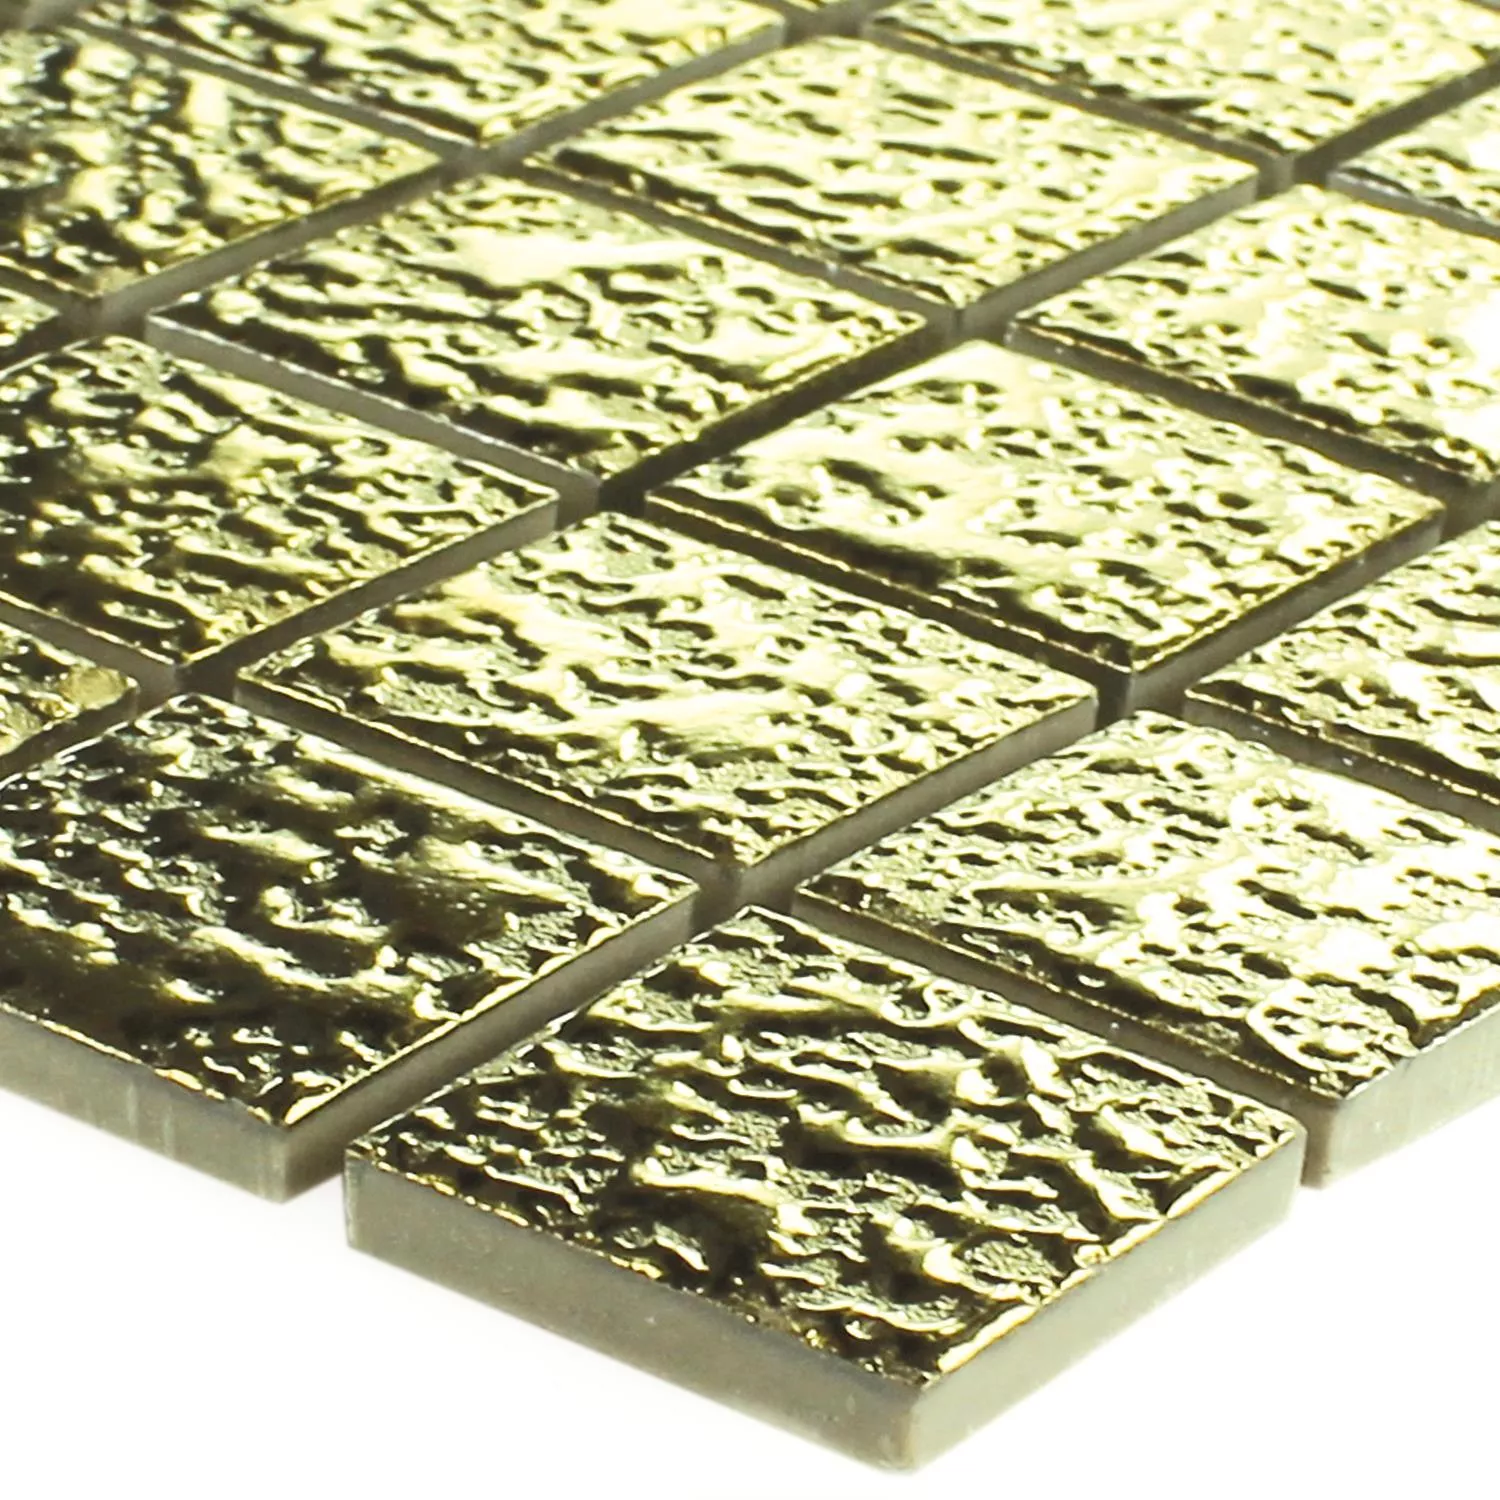 Sample Mosaic Tiles Ceramic Sherbrooke Gold Beaten